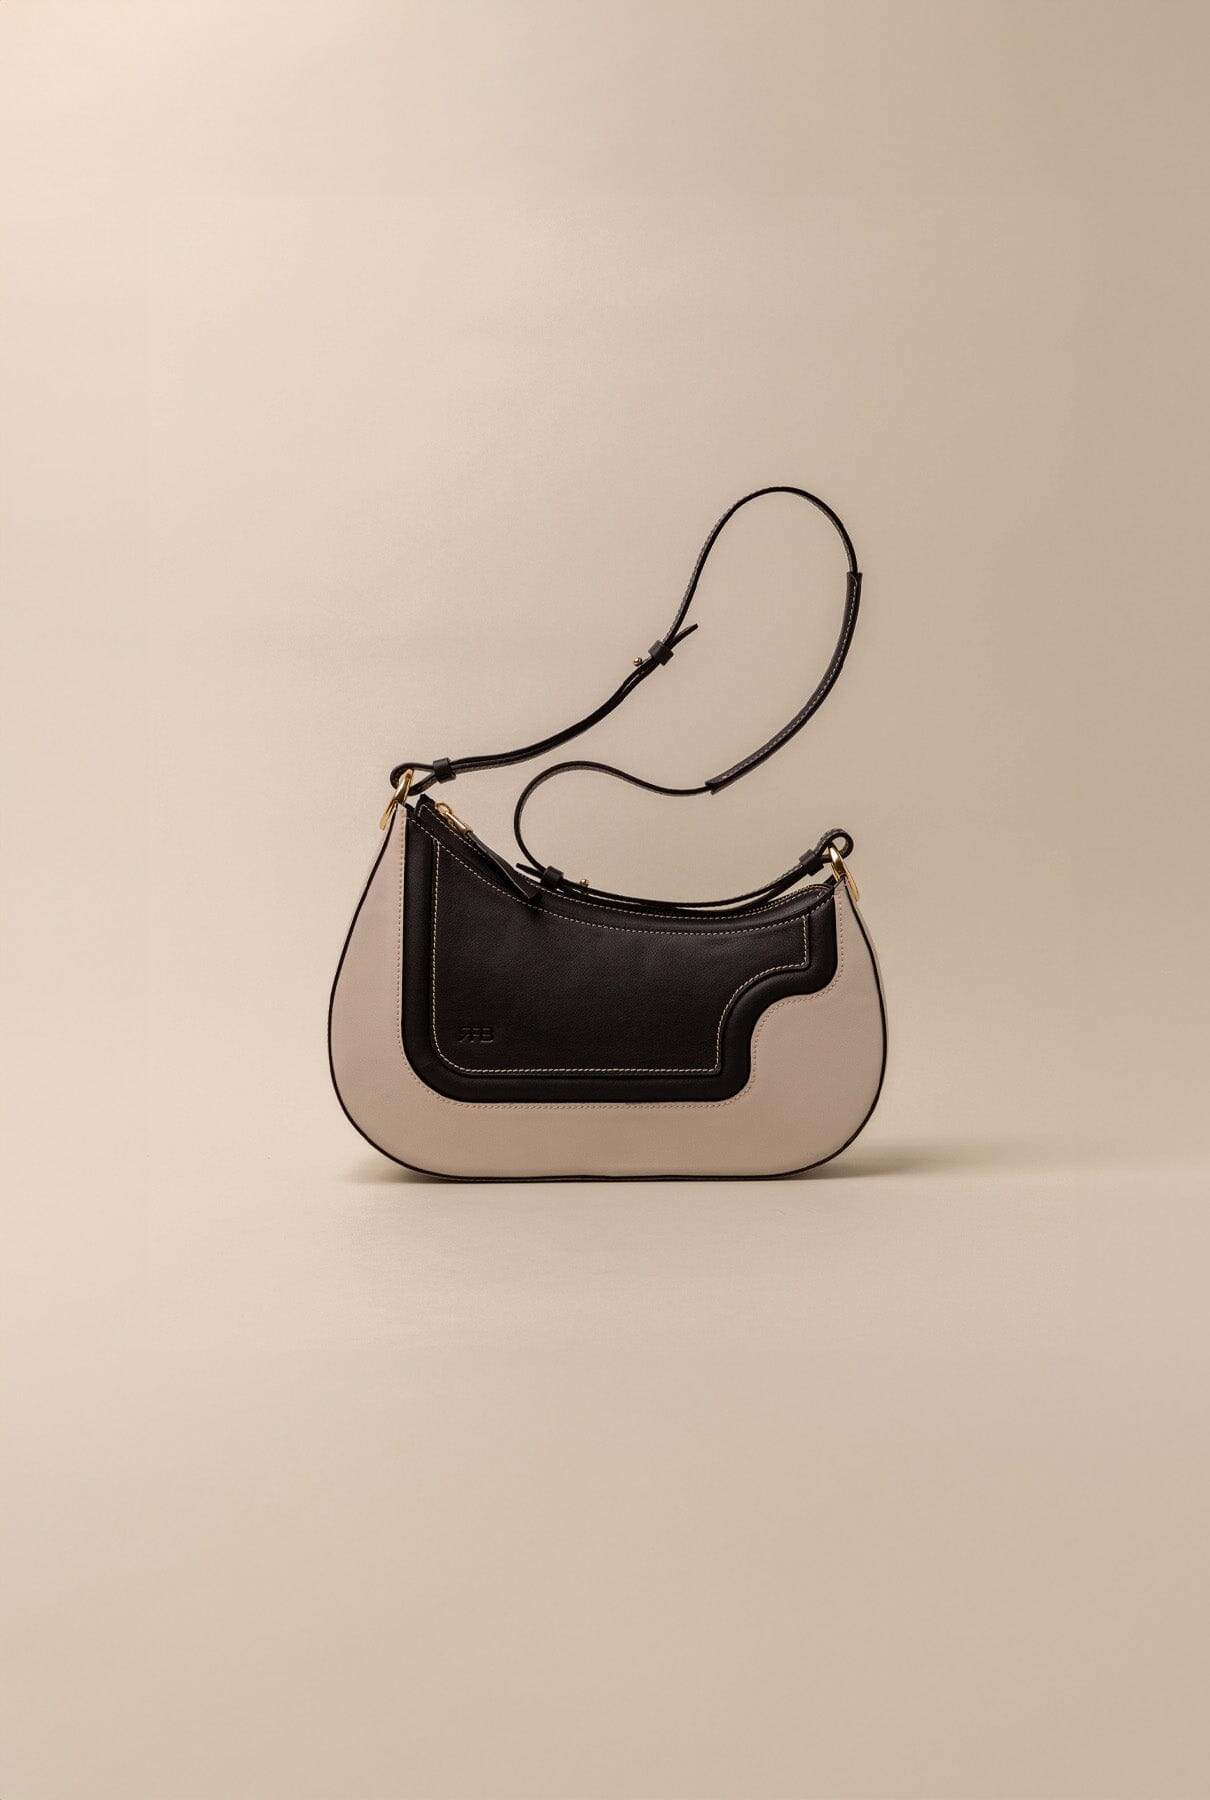 Binomio Bicolor Good Grey Black Leather Shoulder Bag Shoulder Bag RFB 